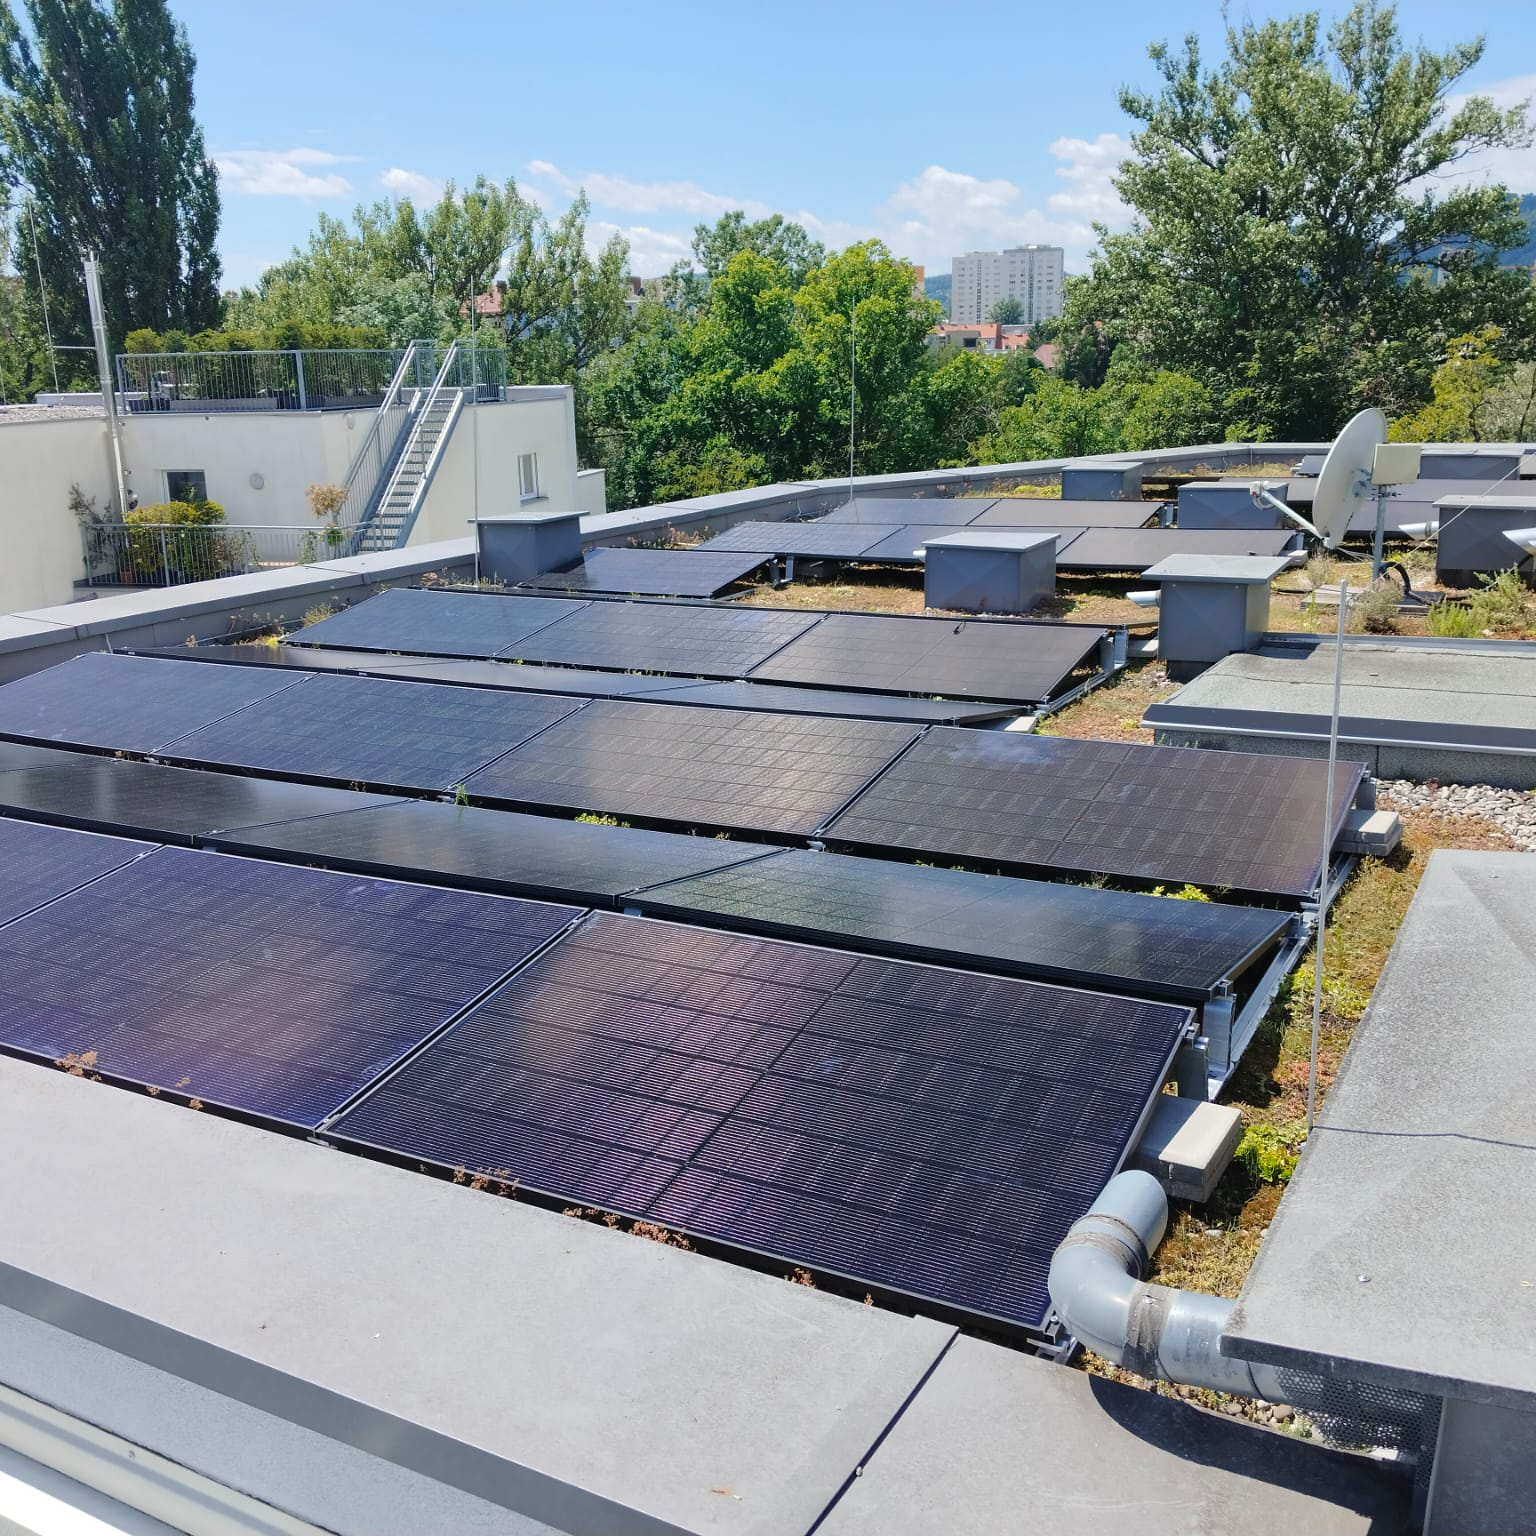 Gemeinschaftliche Photovoltaikanlage auf einem Mehrparteienhaus bzw. Mehrfamilienhaus bzw. Wohnhaus in der Schwimmschulkai in Graz. Betreiber der PV Anlage ist die Sonnenschmiede.